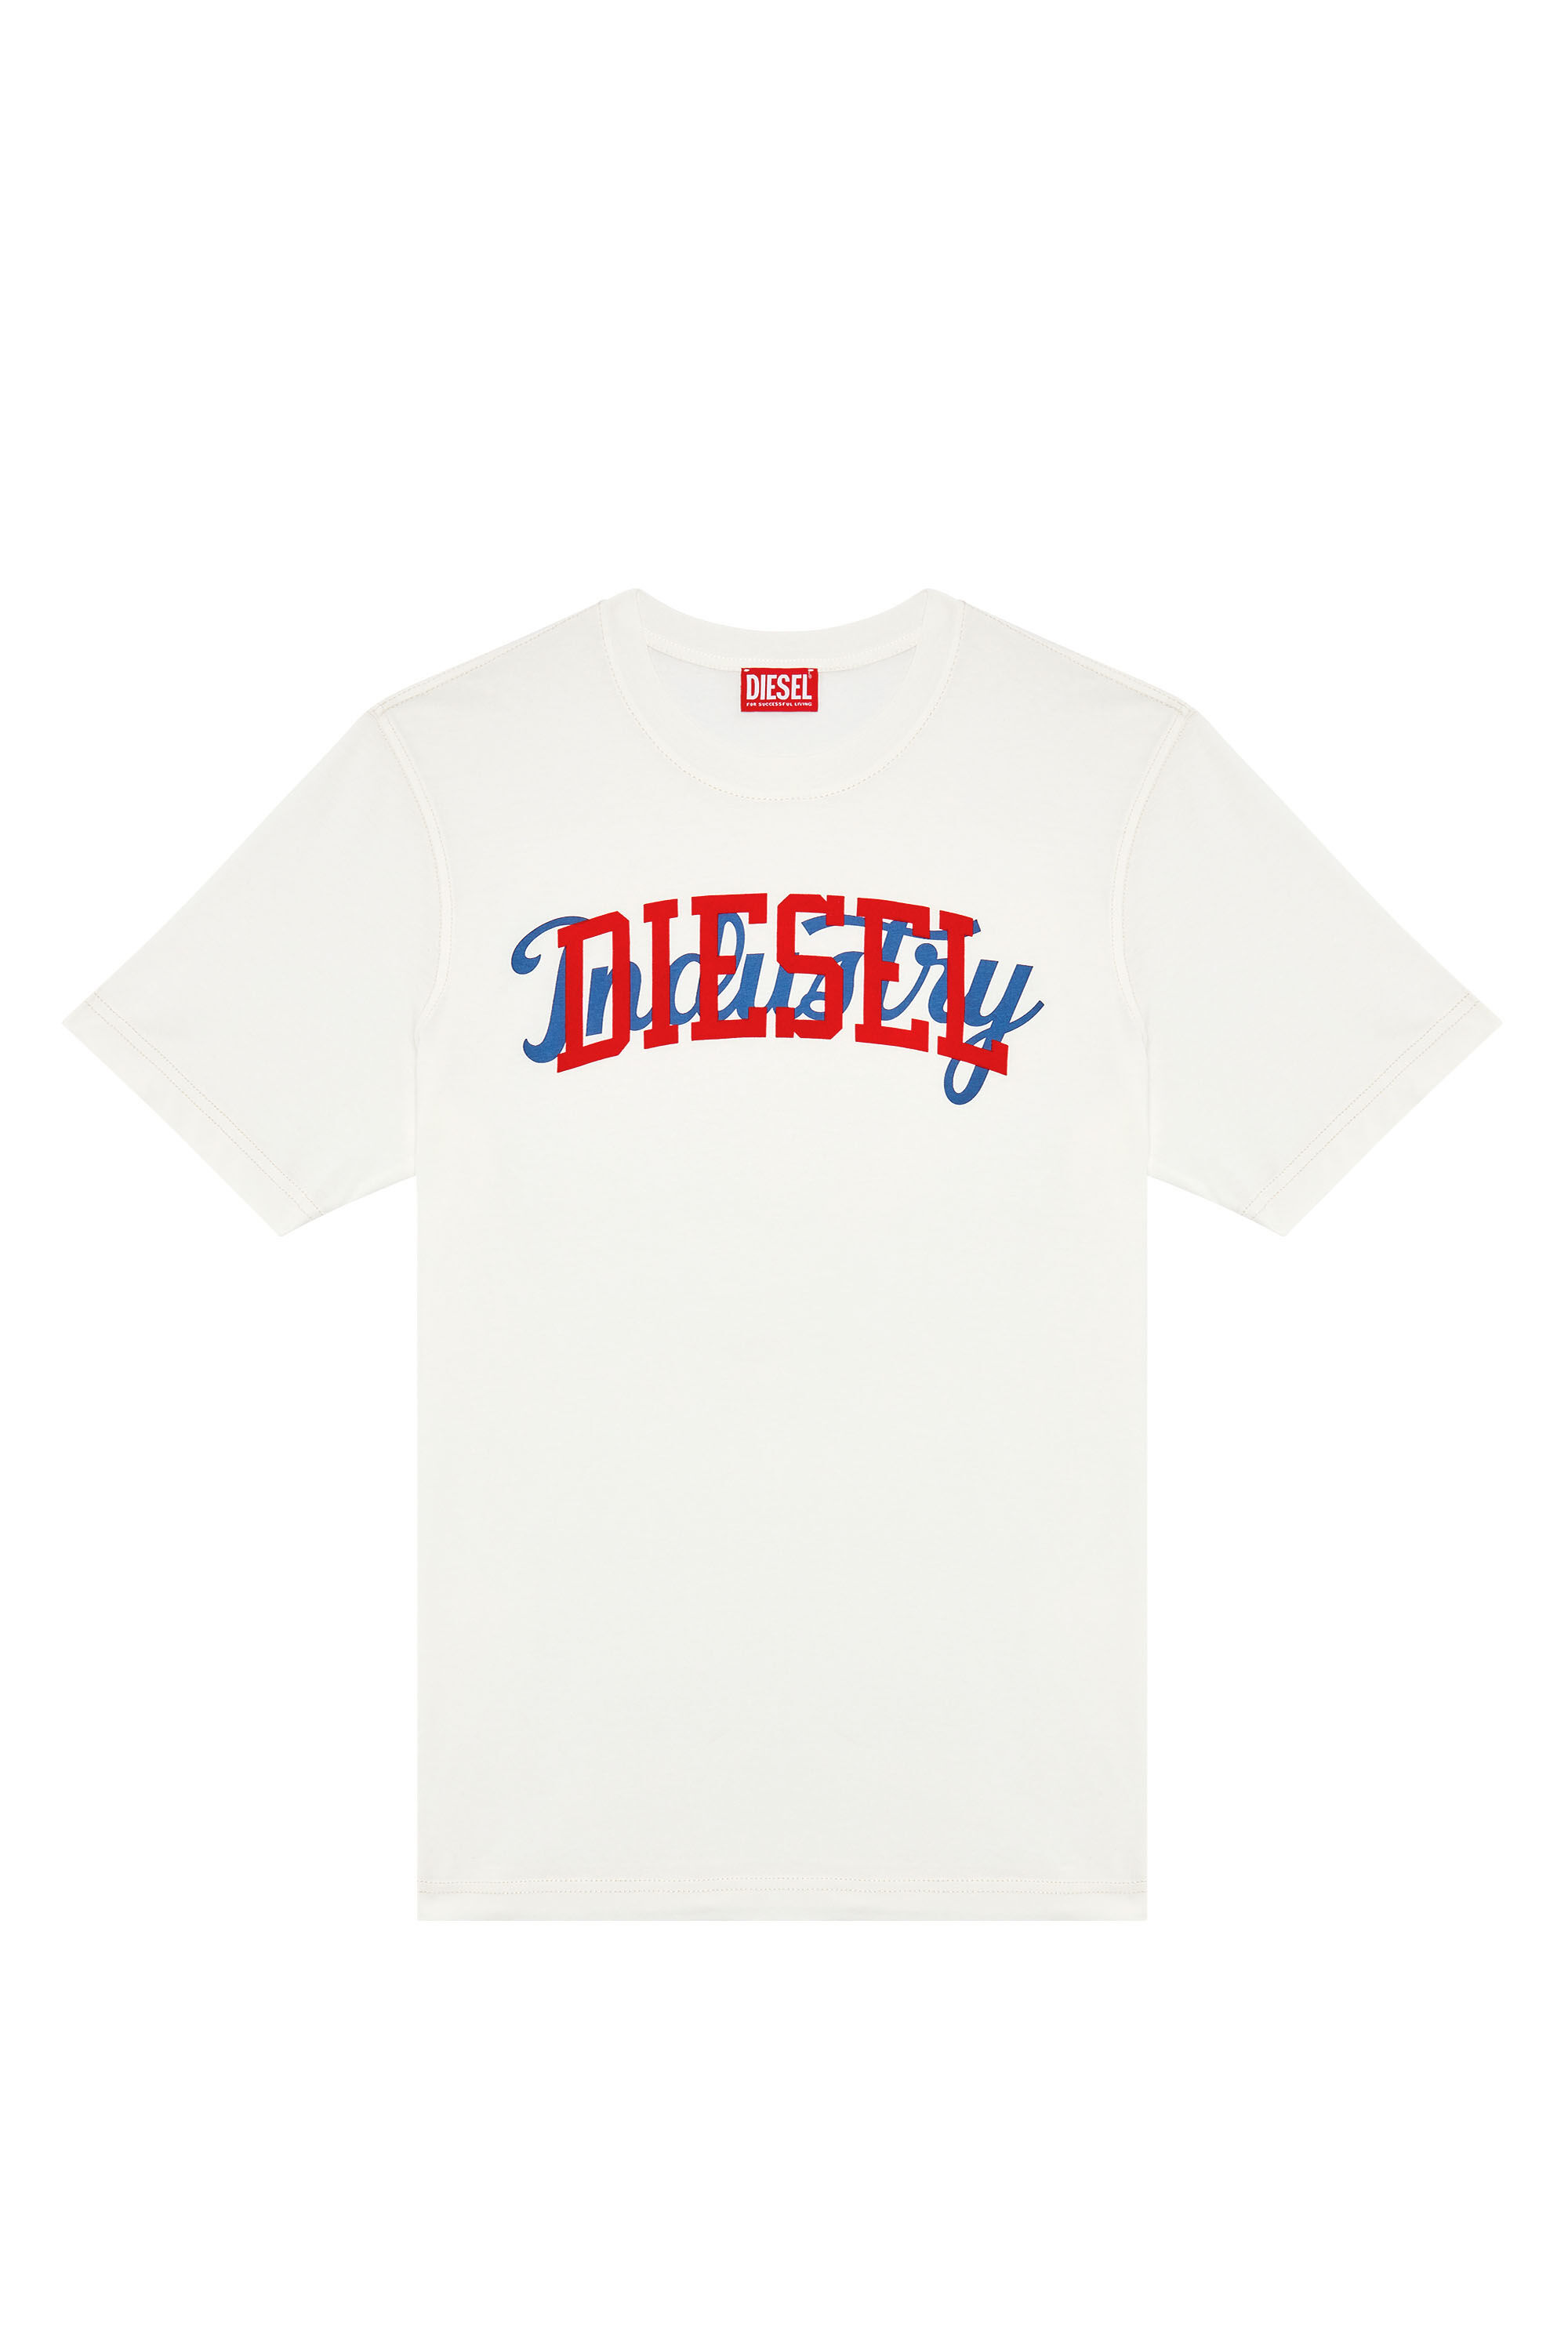 Diesel - T-JUST-N10, Homme T-shirt avec imprimés Diesel contrastés in Blanc - Image 2